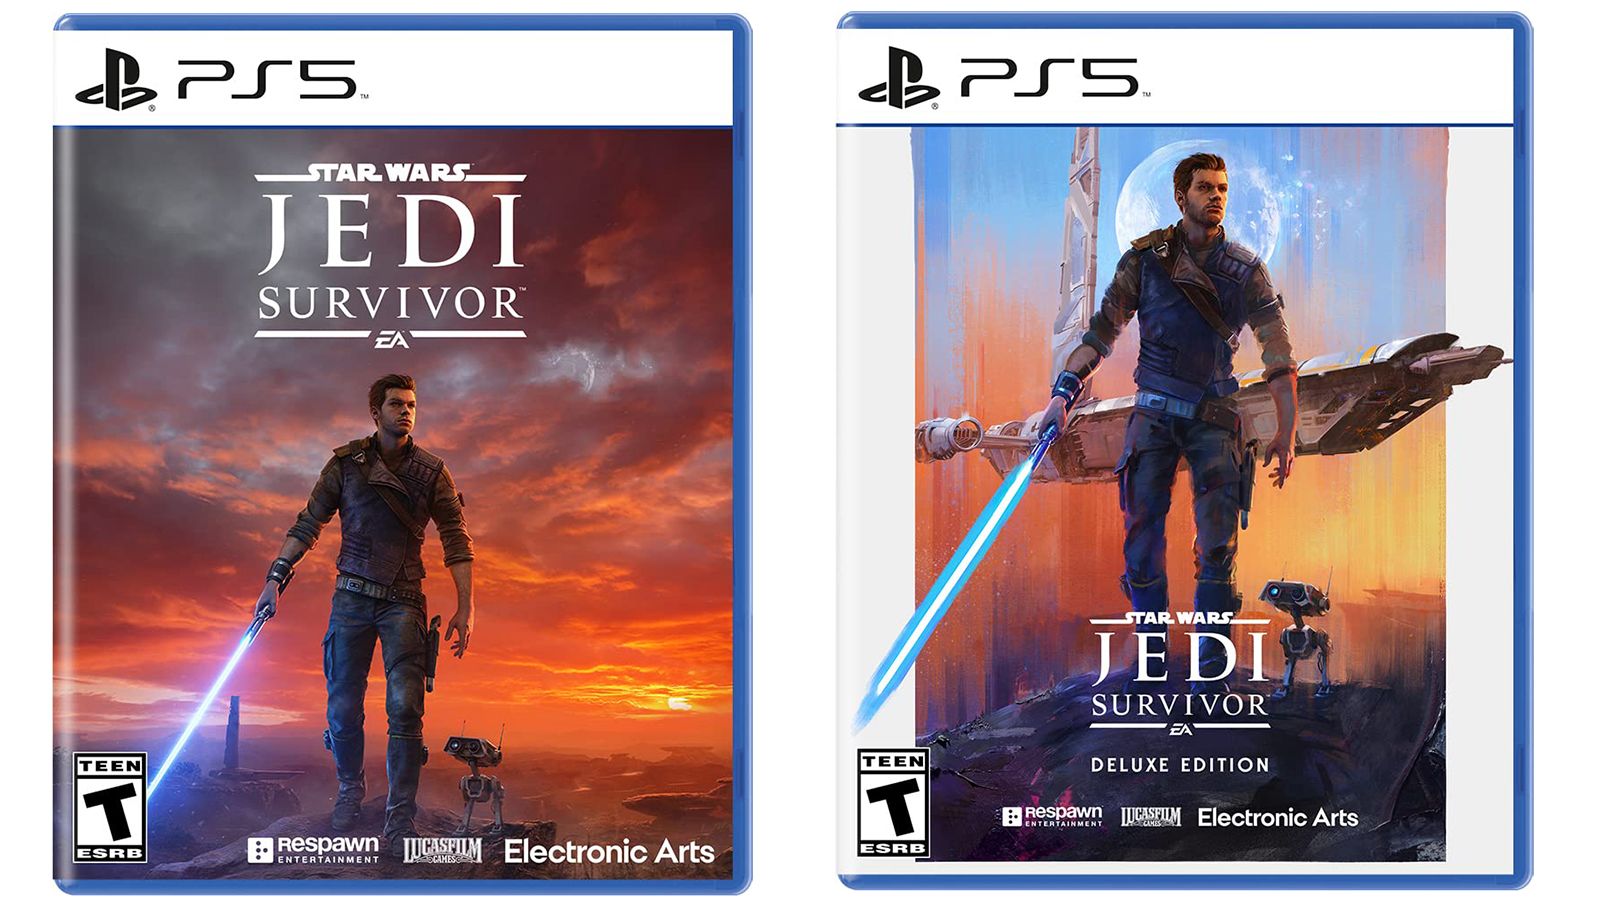 Star Wars Jedi: Survivor review